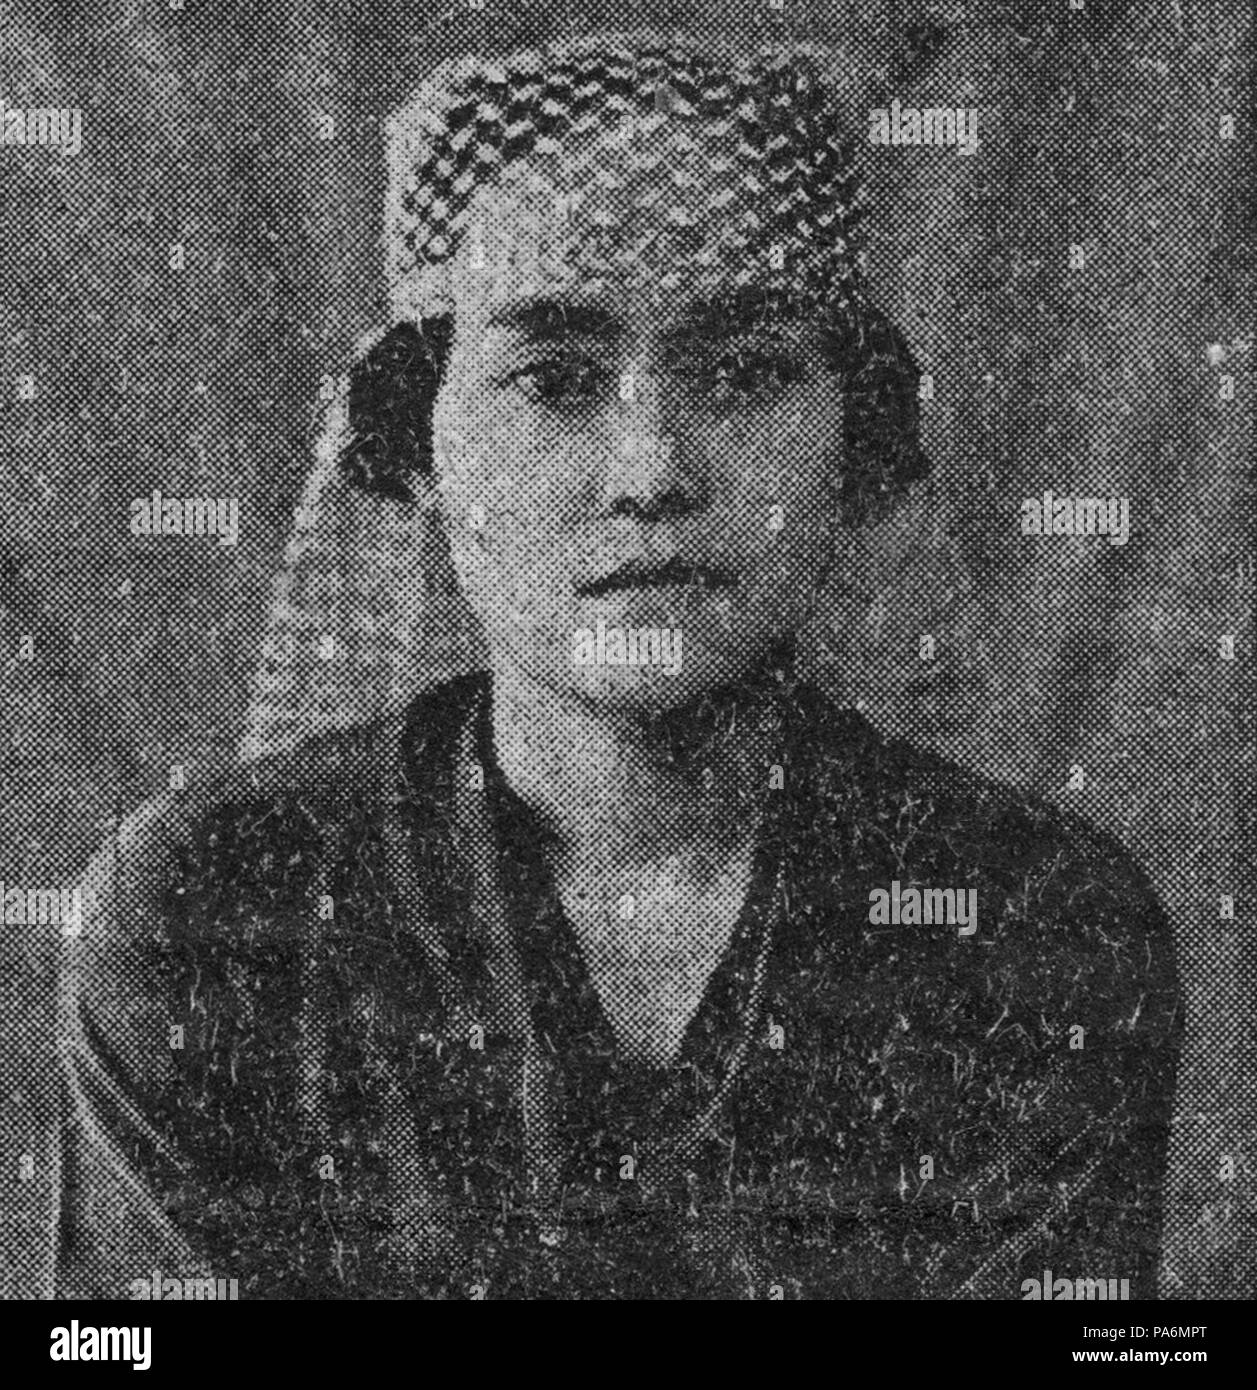 184 Nji R Hadji Djoelaeha, His Master's Voice Advertisement, Surabaya (c 1930s) Stock Photo